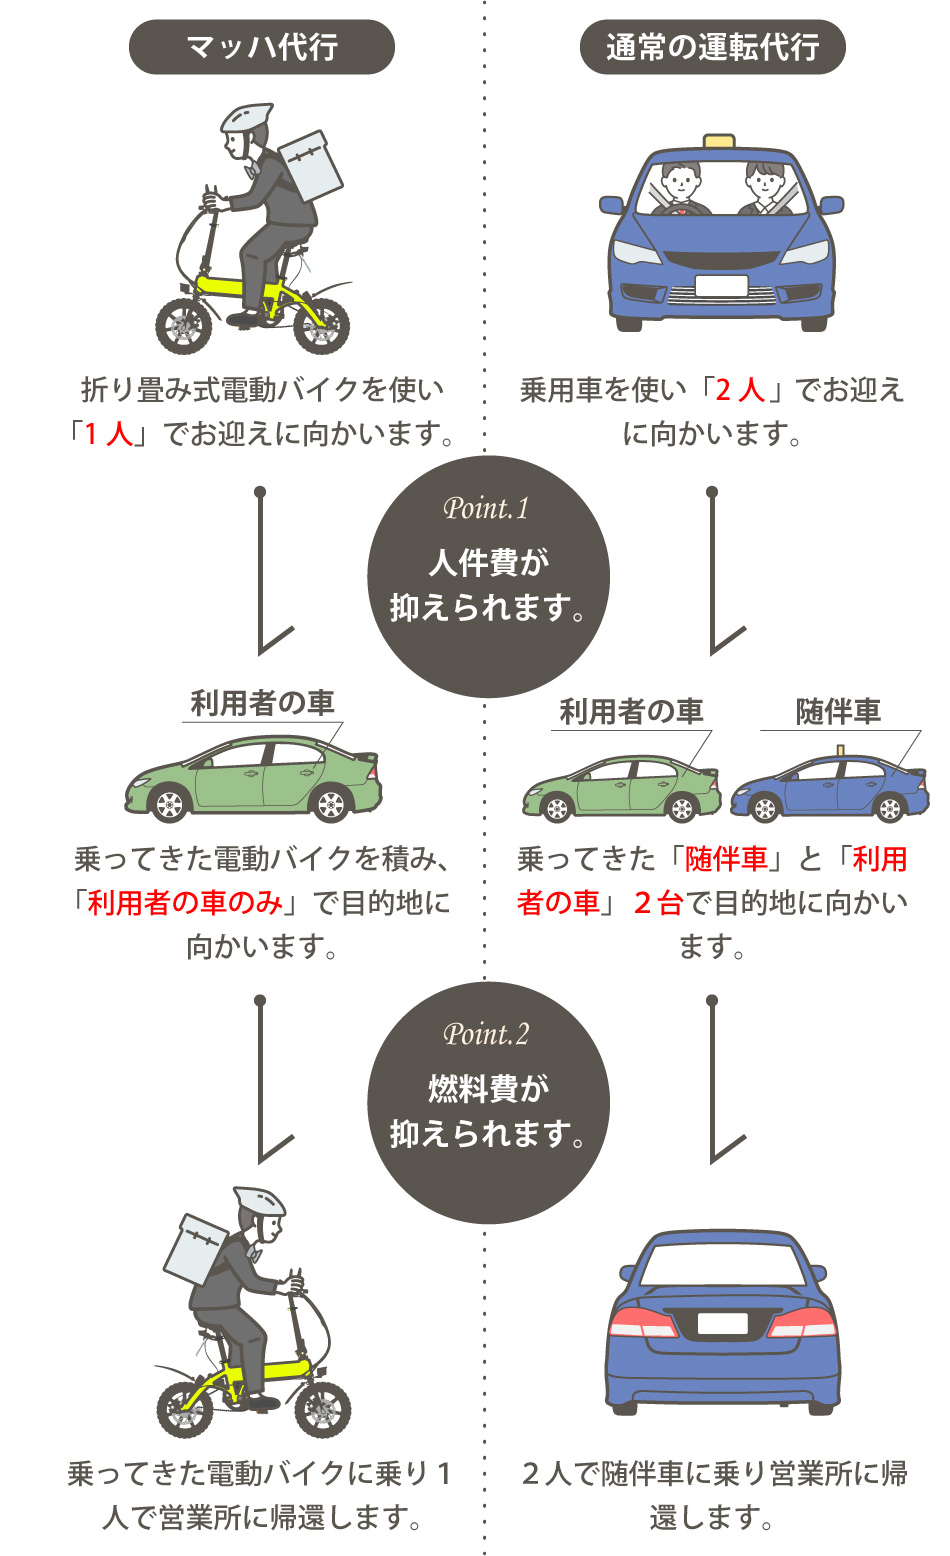 マッハ代行はスタッフ１人が折り畳み電動バイクに乗り対応するので人件費と燃料費が抑えられる。一般的な運転代行は2人で随伴車に乗り対応。